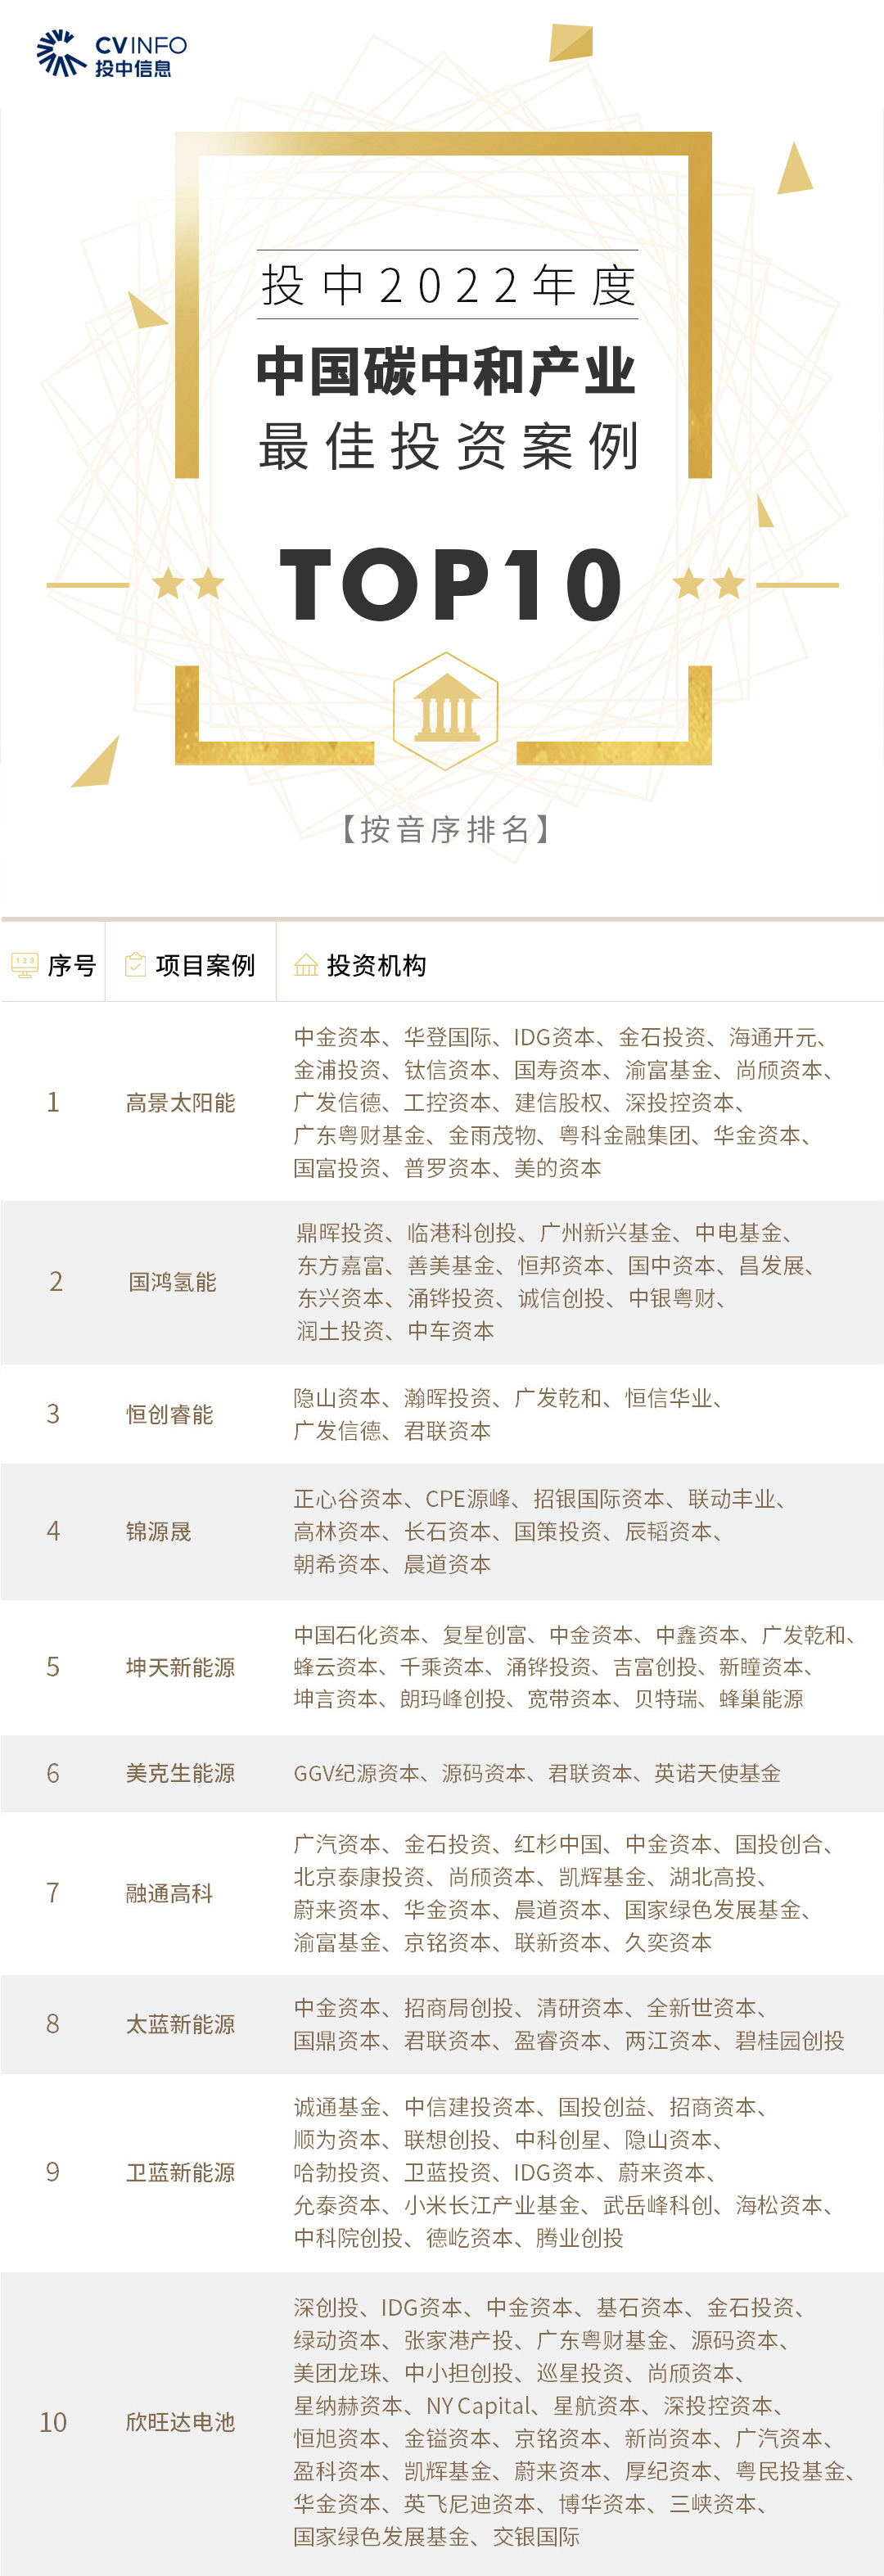 56-中国碳中和产业-最佳投资案例TOP10【按音序排列】.jpg